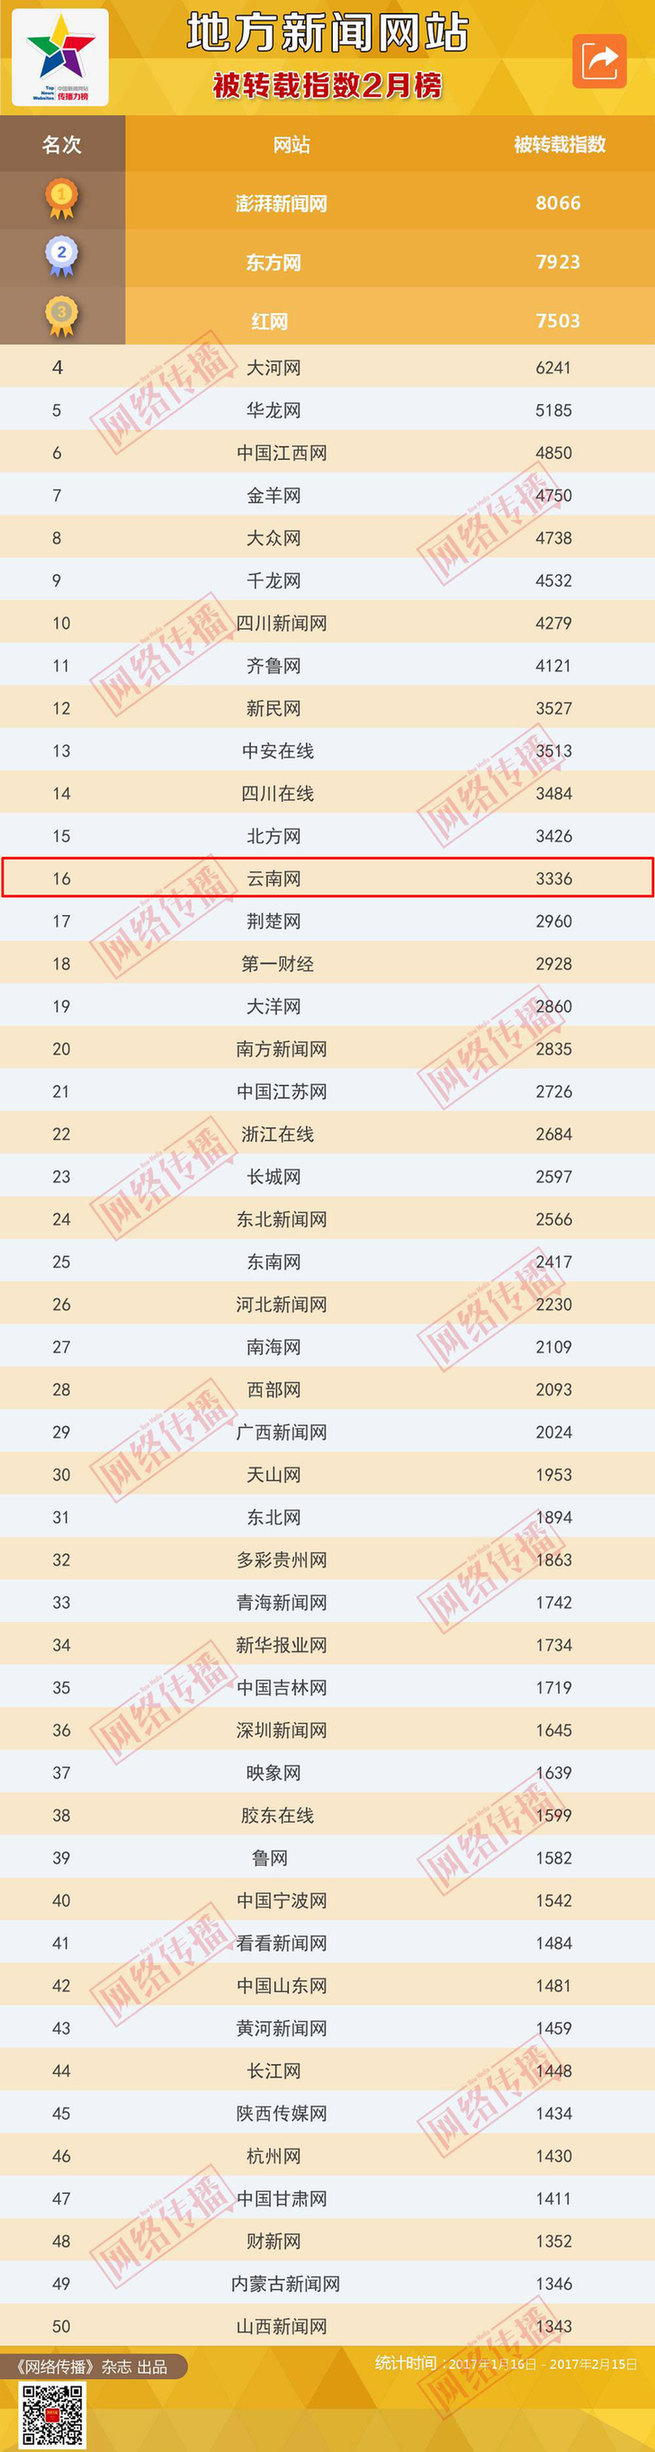 云南网2月被转载指数位列地方新闻网站第16位